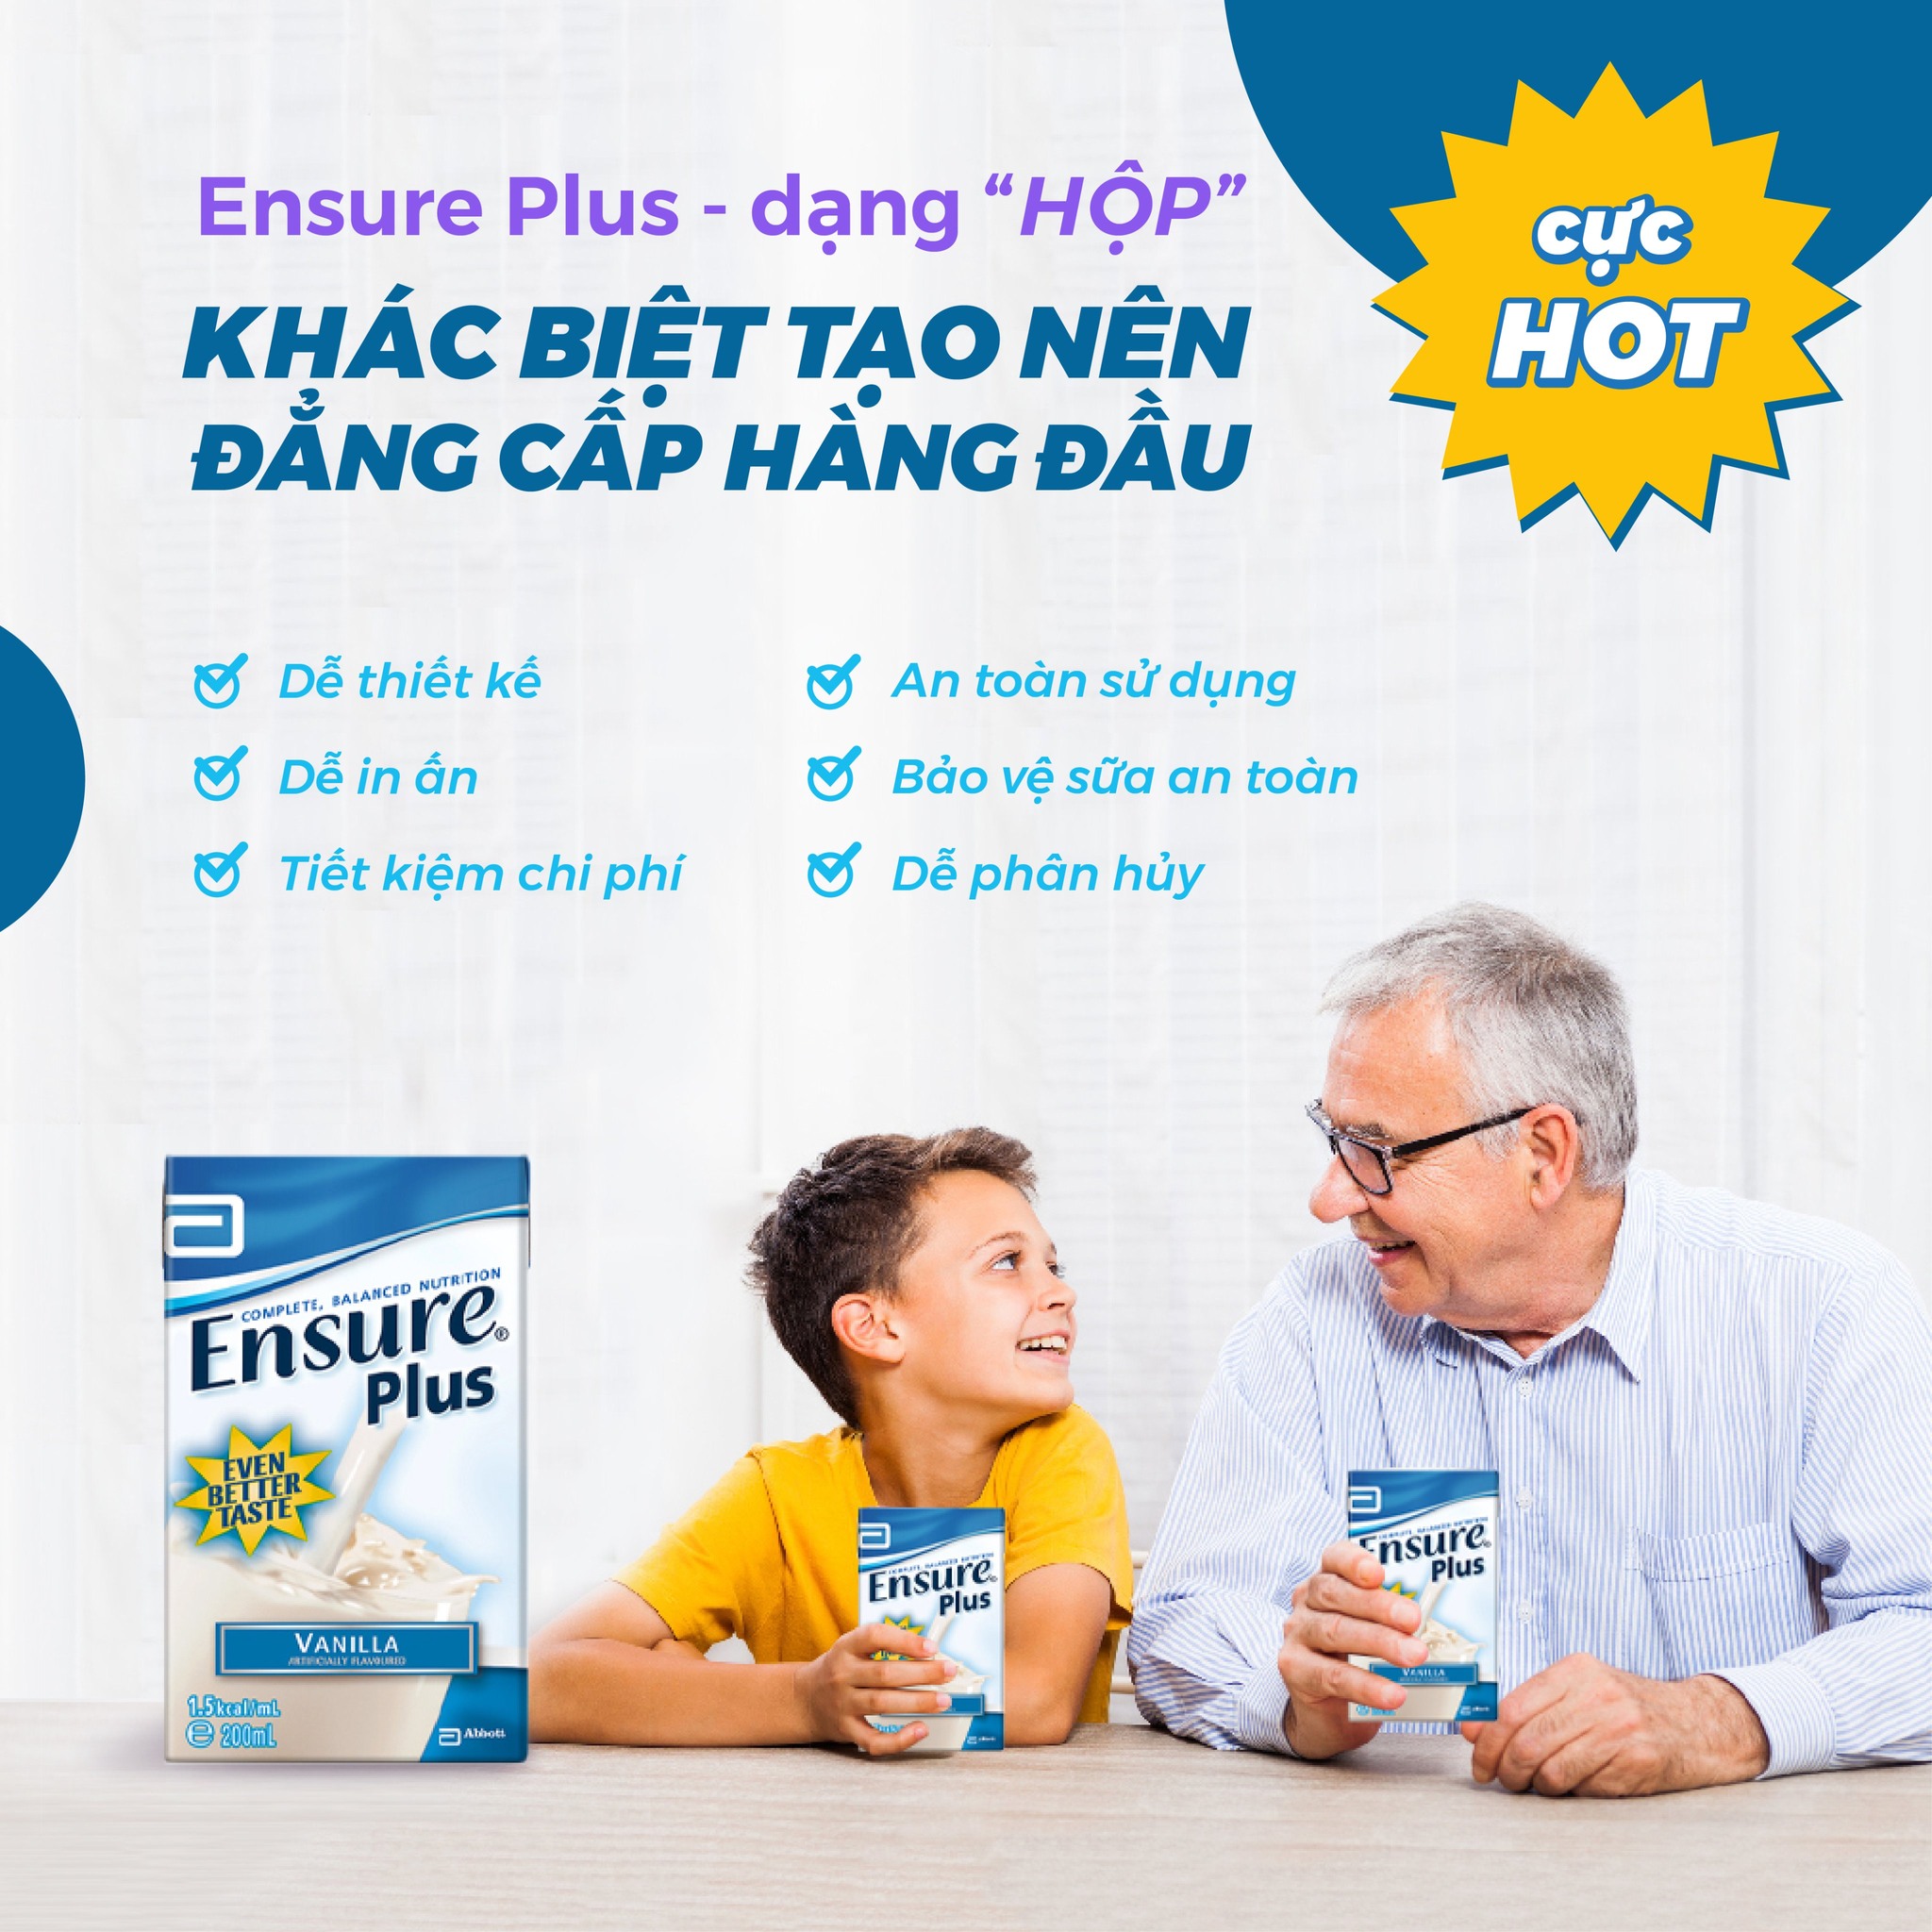 Ensure Plus cho người già